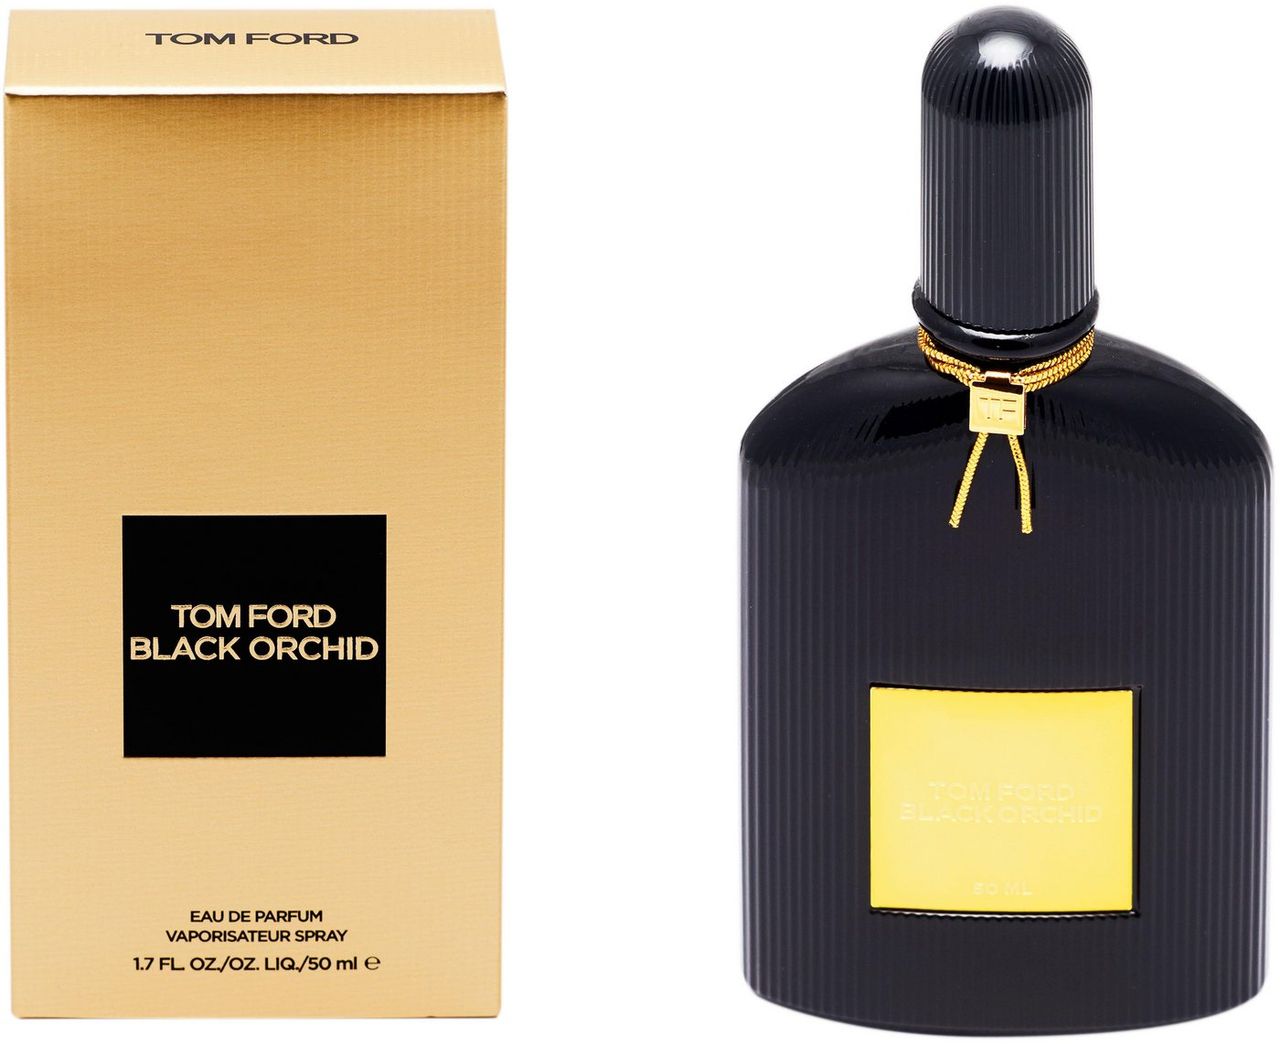 Tom Ford Eau de Parfum Black Orchid